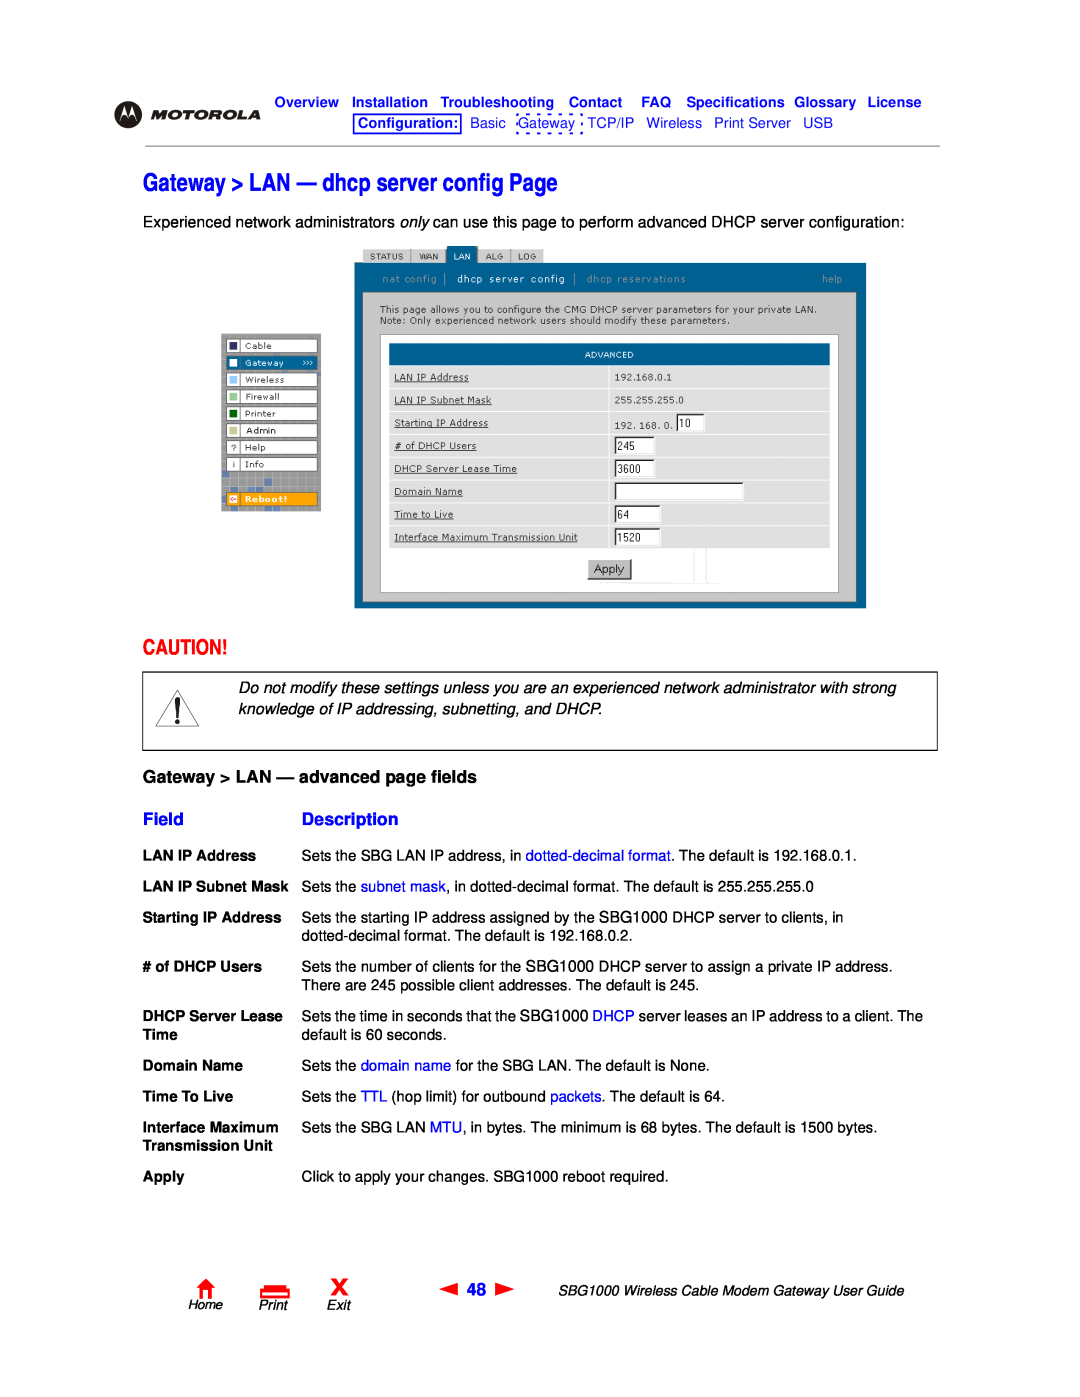 Motorola SBG1000 manual Gateway LAN - dhcp server config Page, Gateway LAN - advanced page fields, FieldDescription 